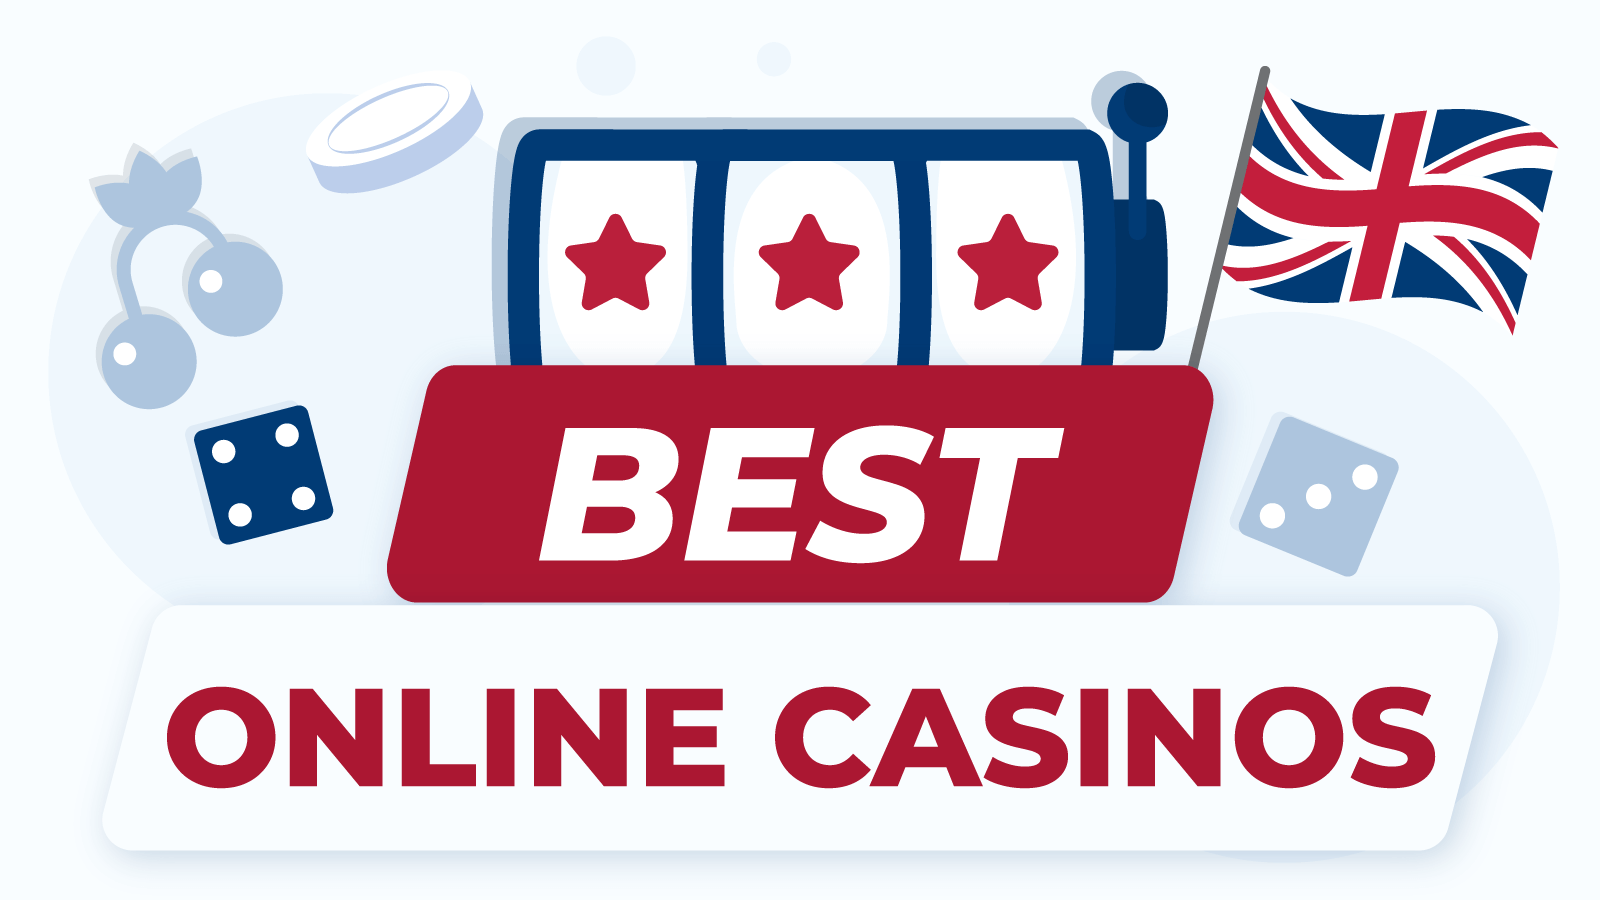 Best Online Casinos UK